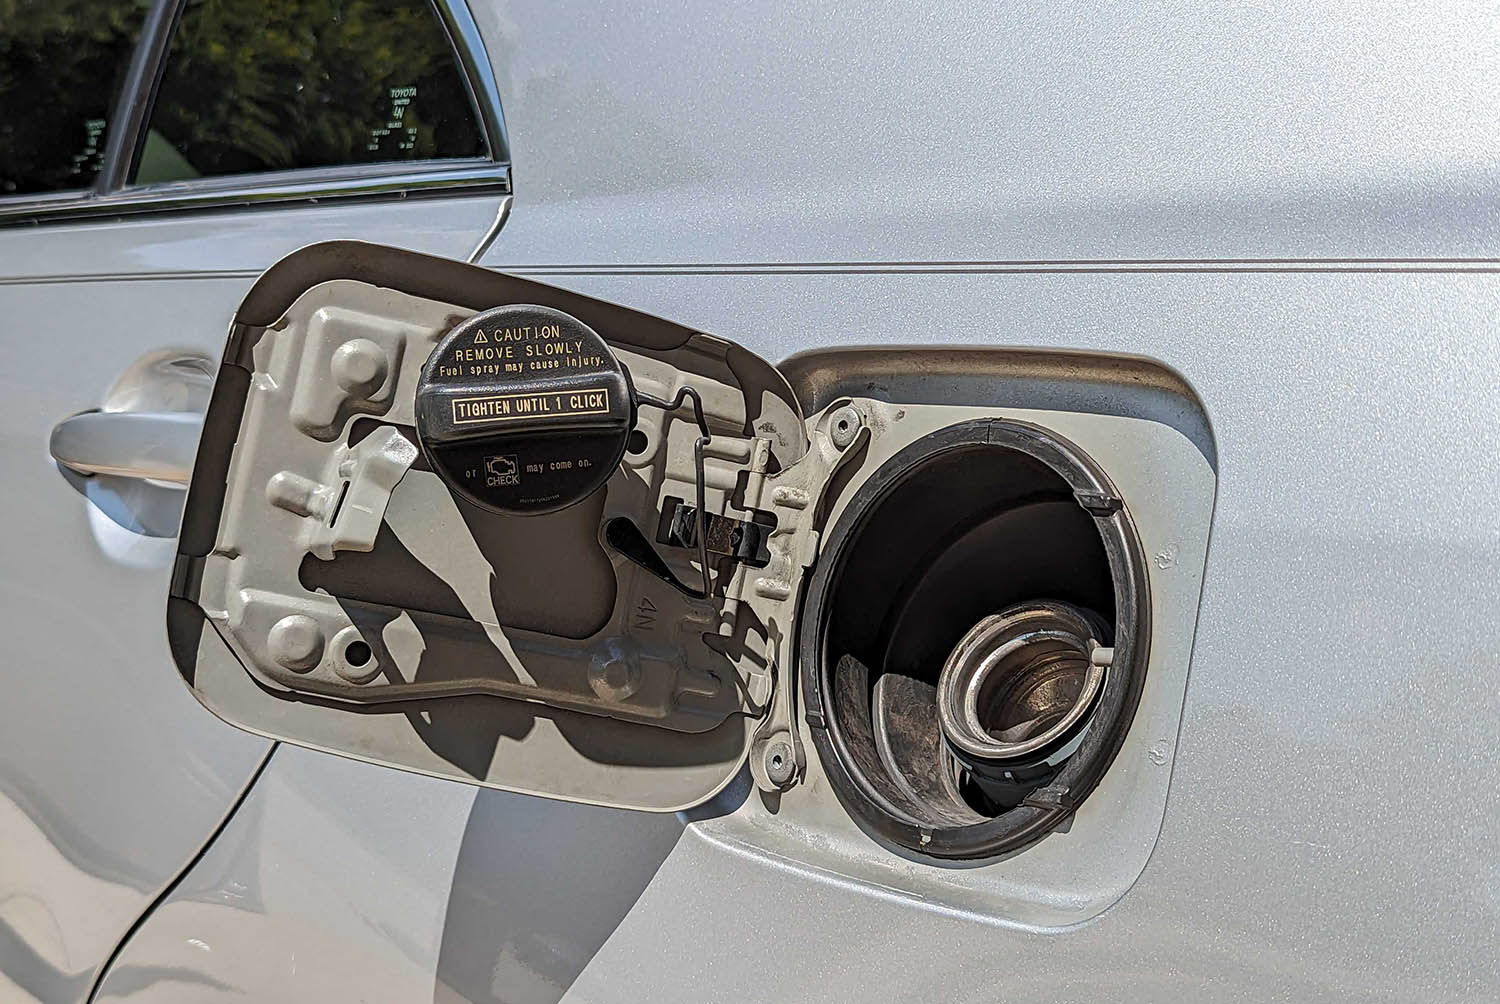 View of gas-cap holder on fuel door.